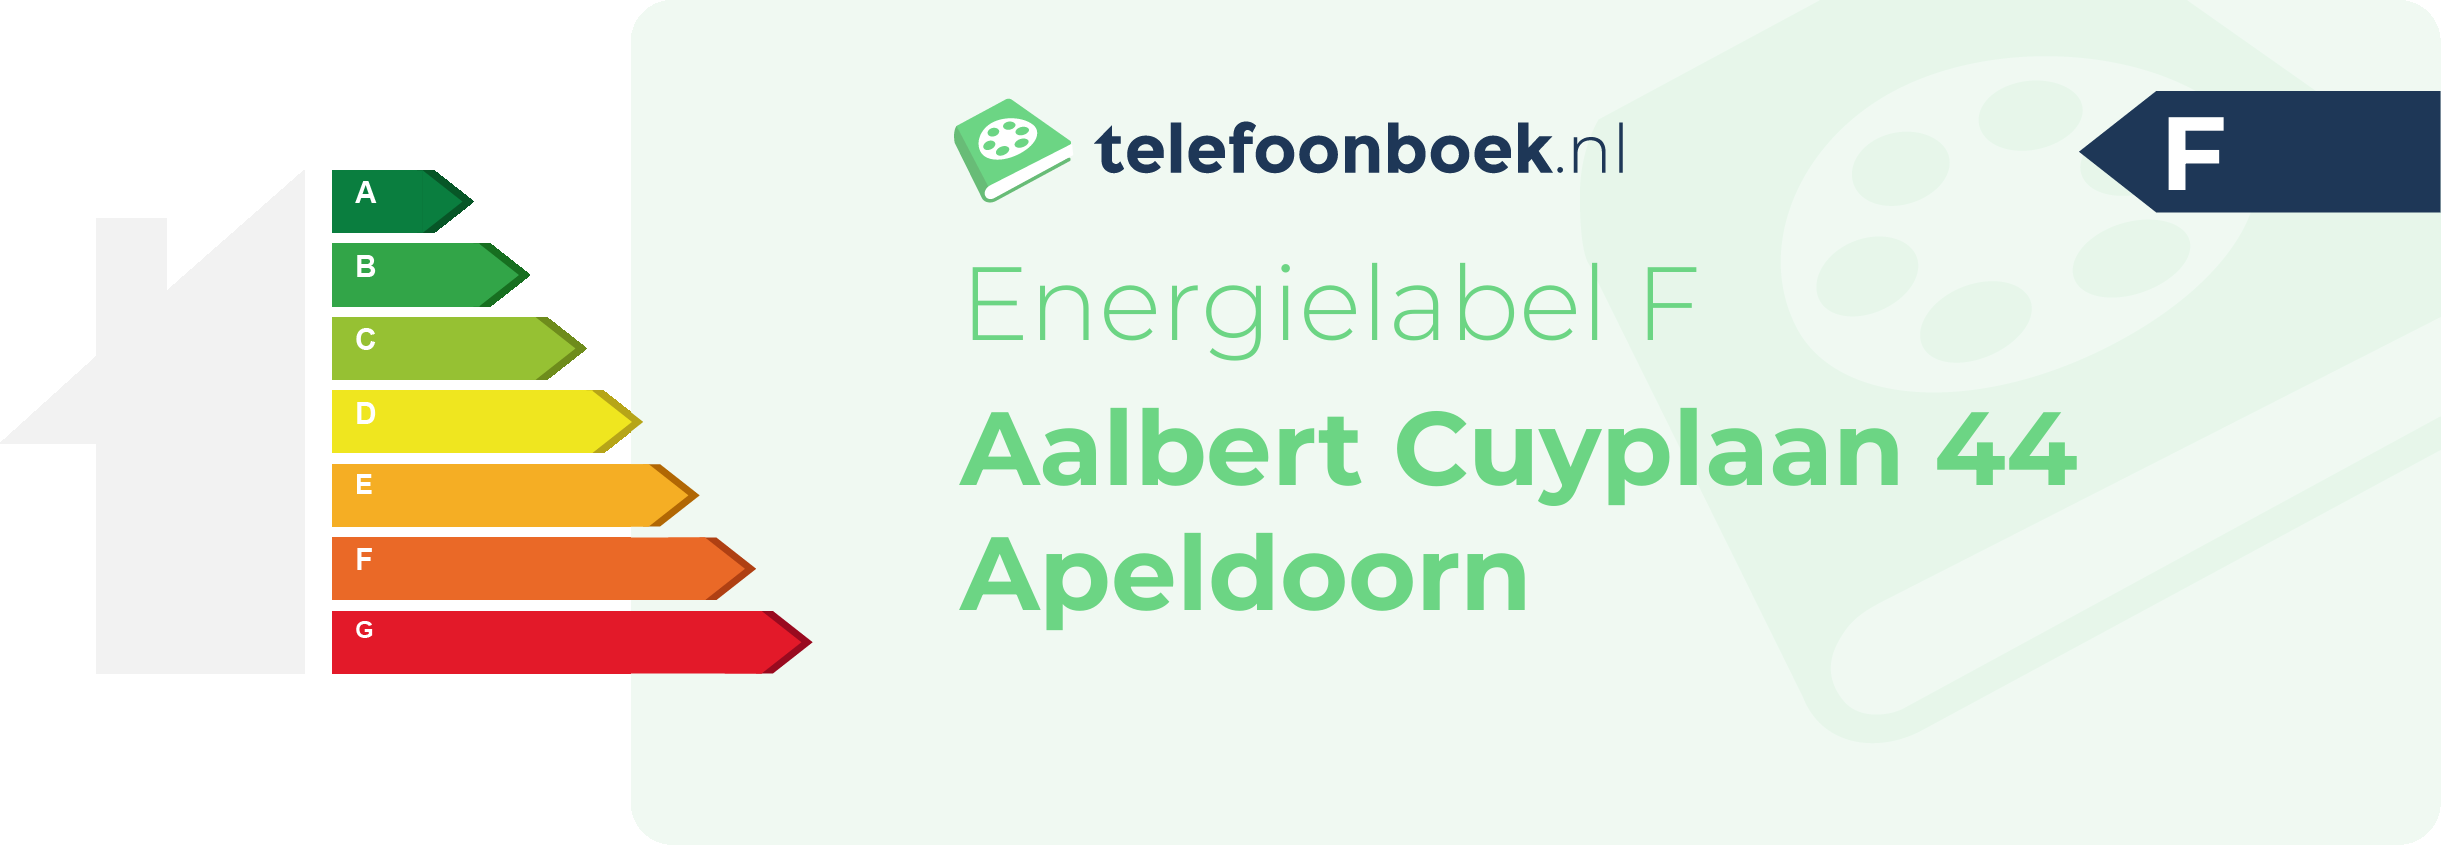 Energielabel Aalbert Cuyplaan 44 Apeldoorn